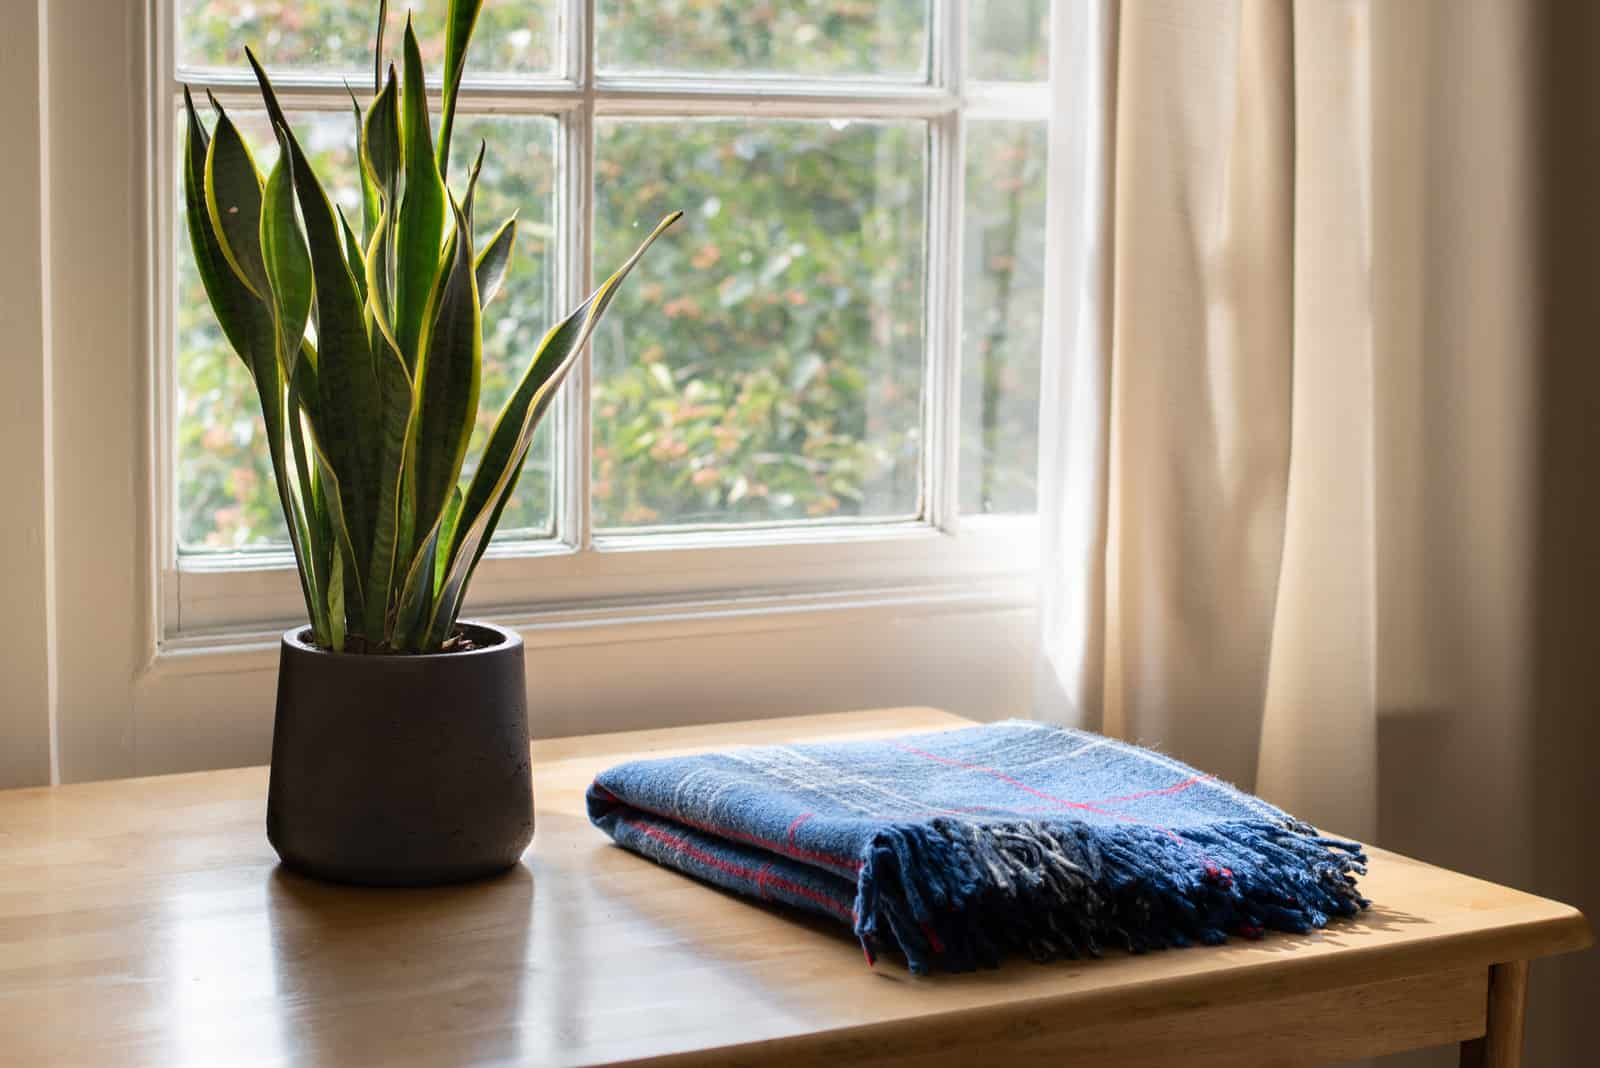 Dracaena trifasciata and blanket by window